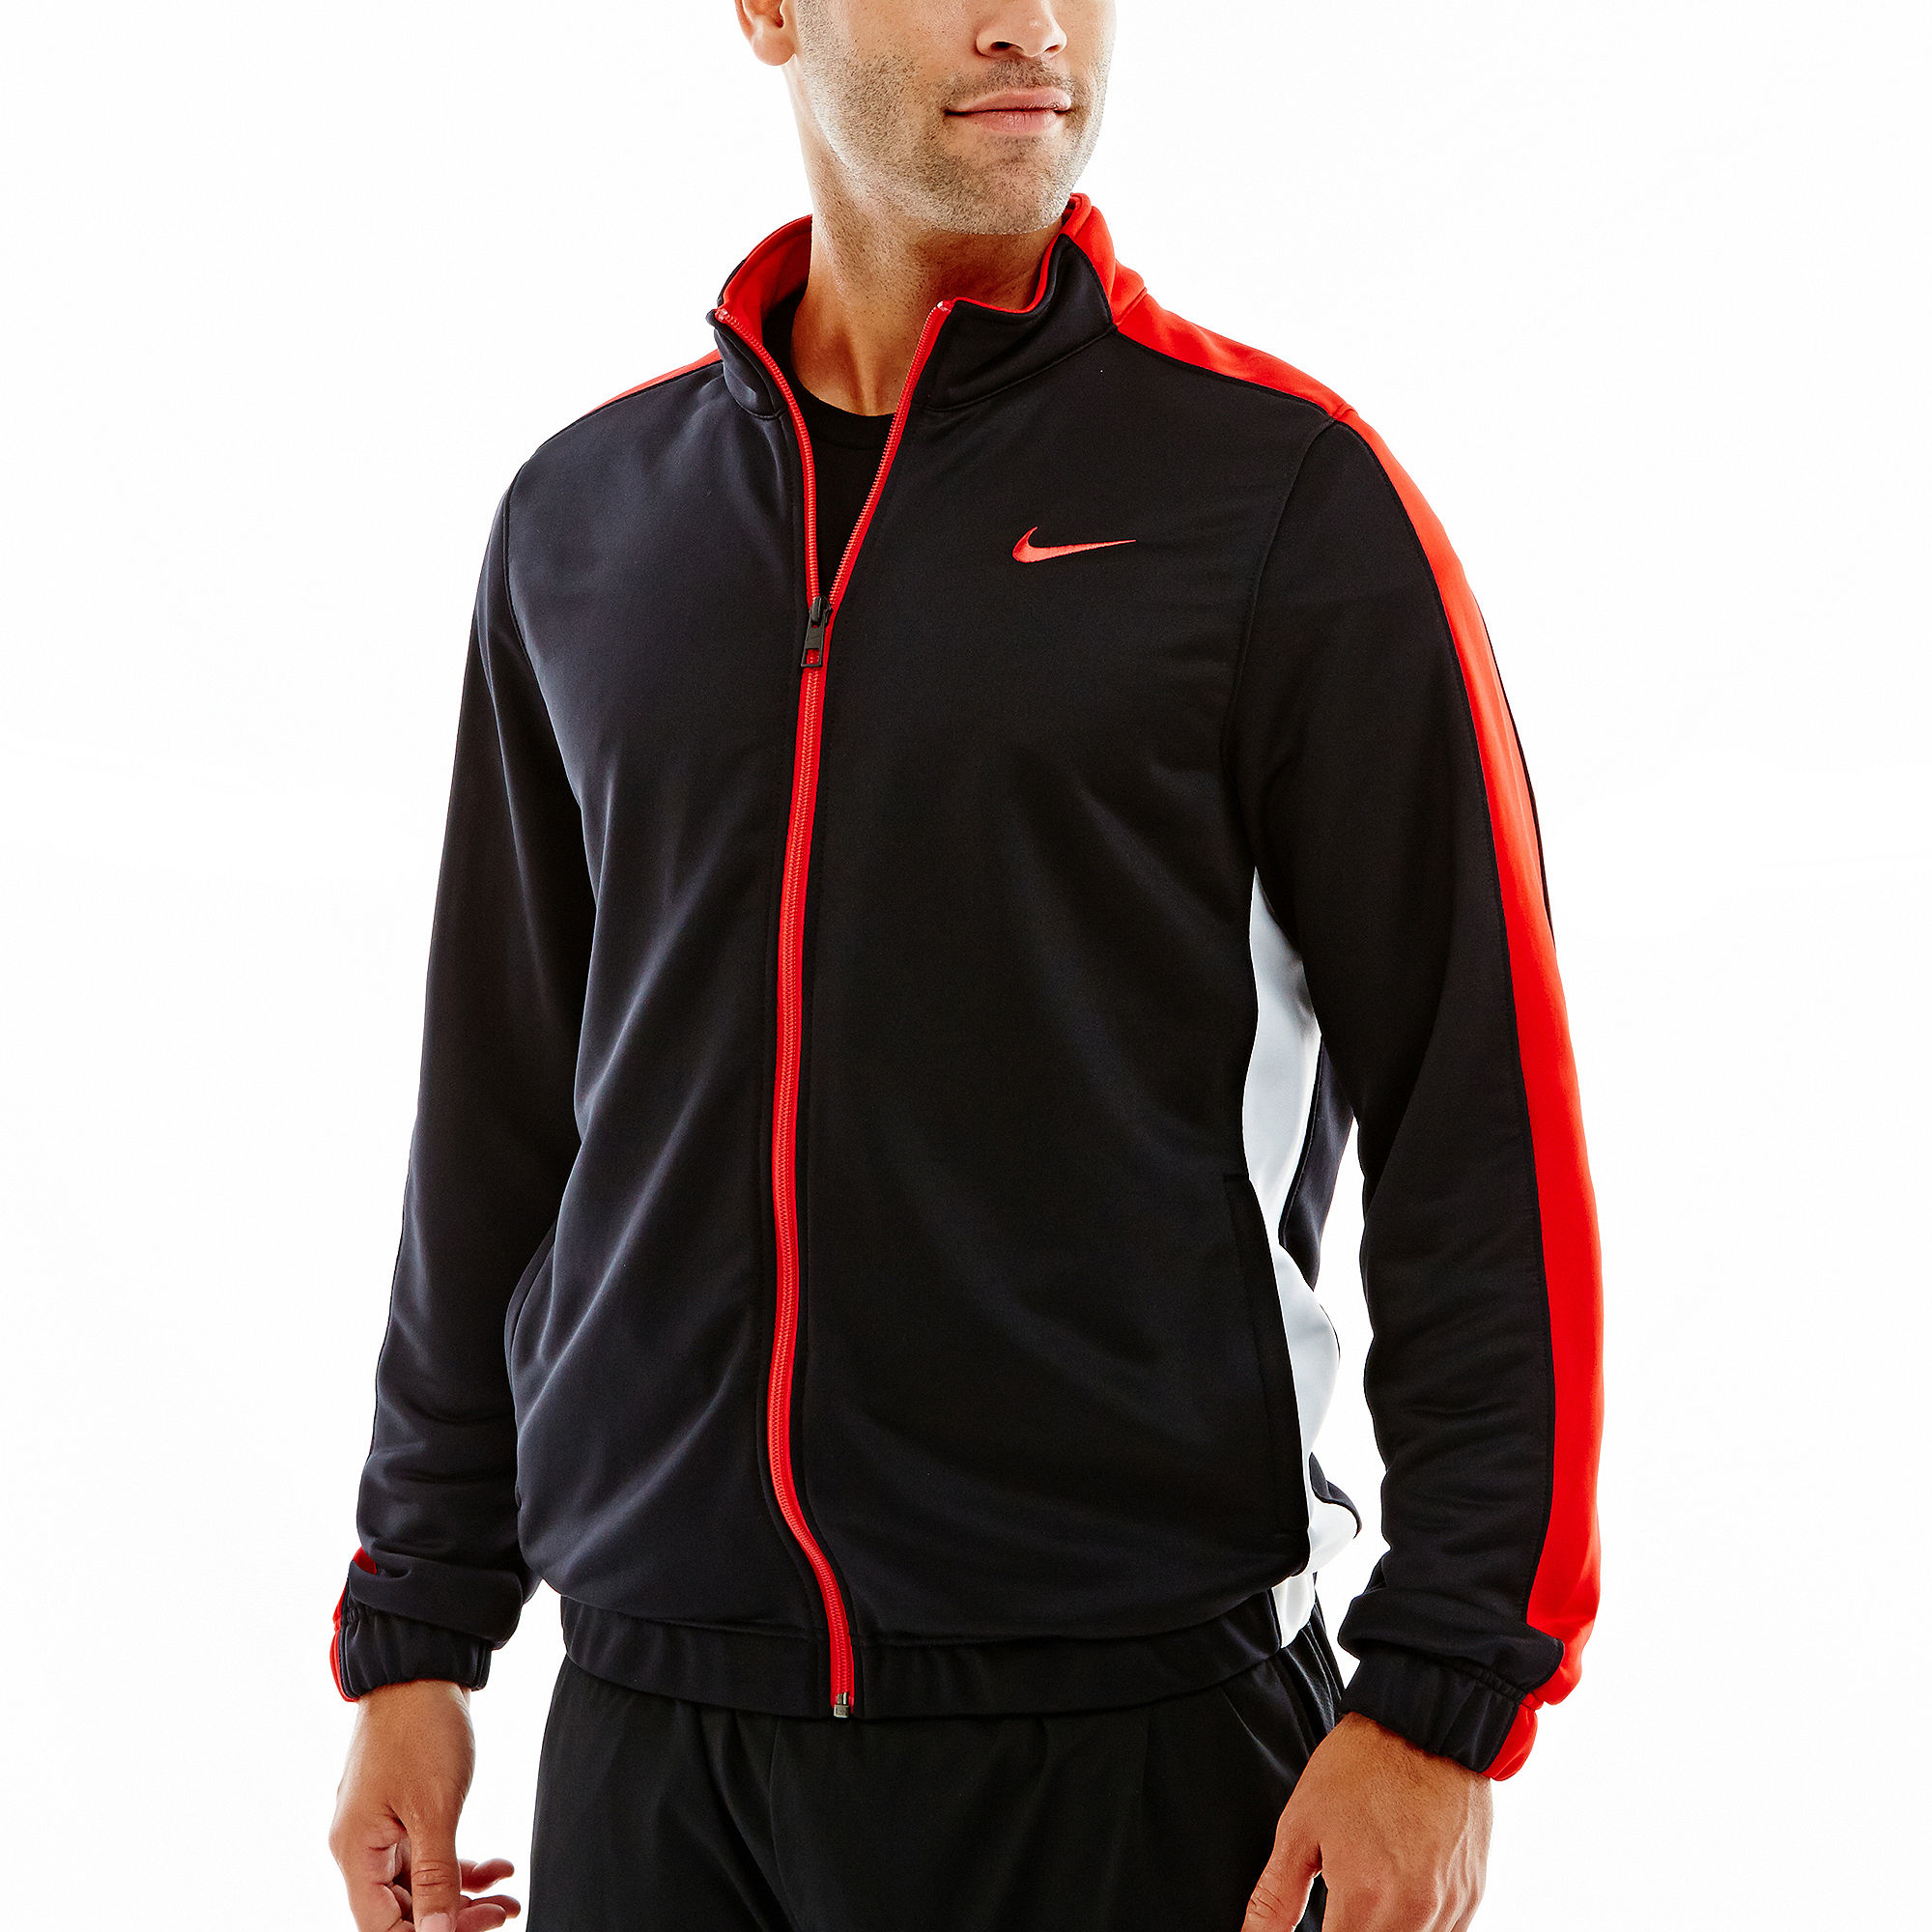 UPC 886916396891 product image for Nike League Basketball Jacket | upcitemdb.com